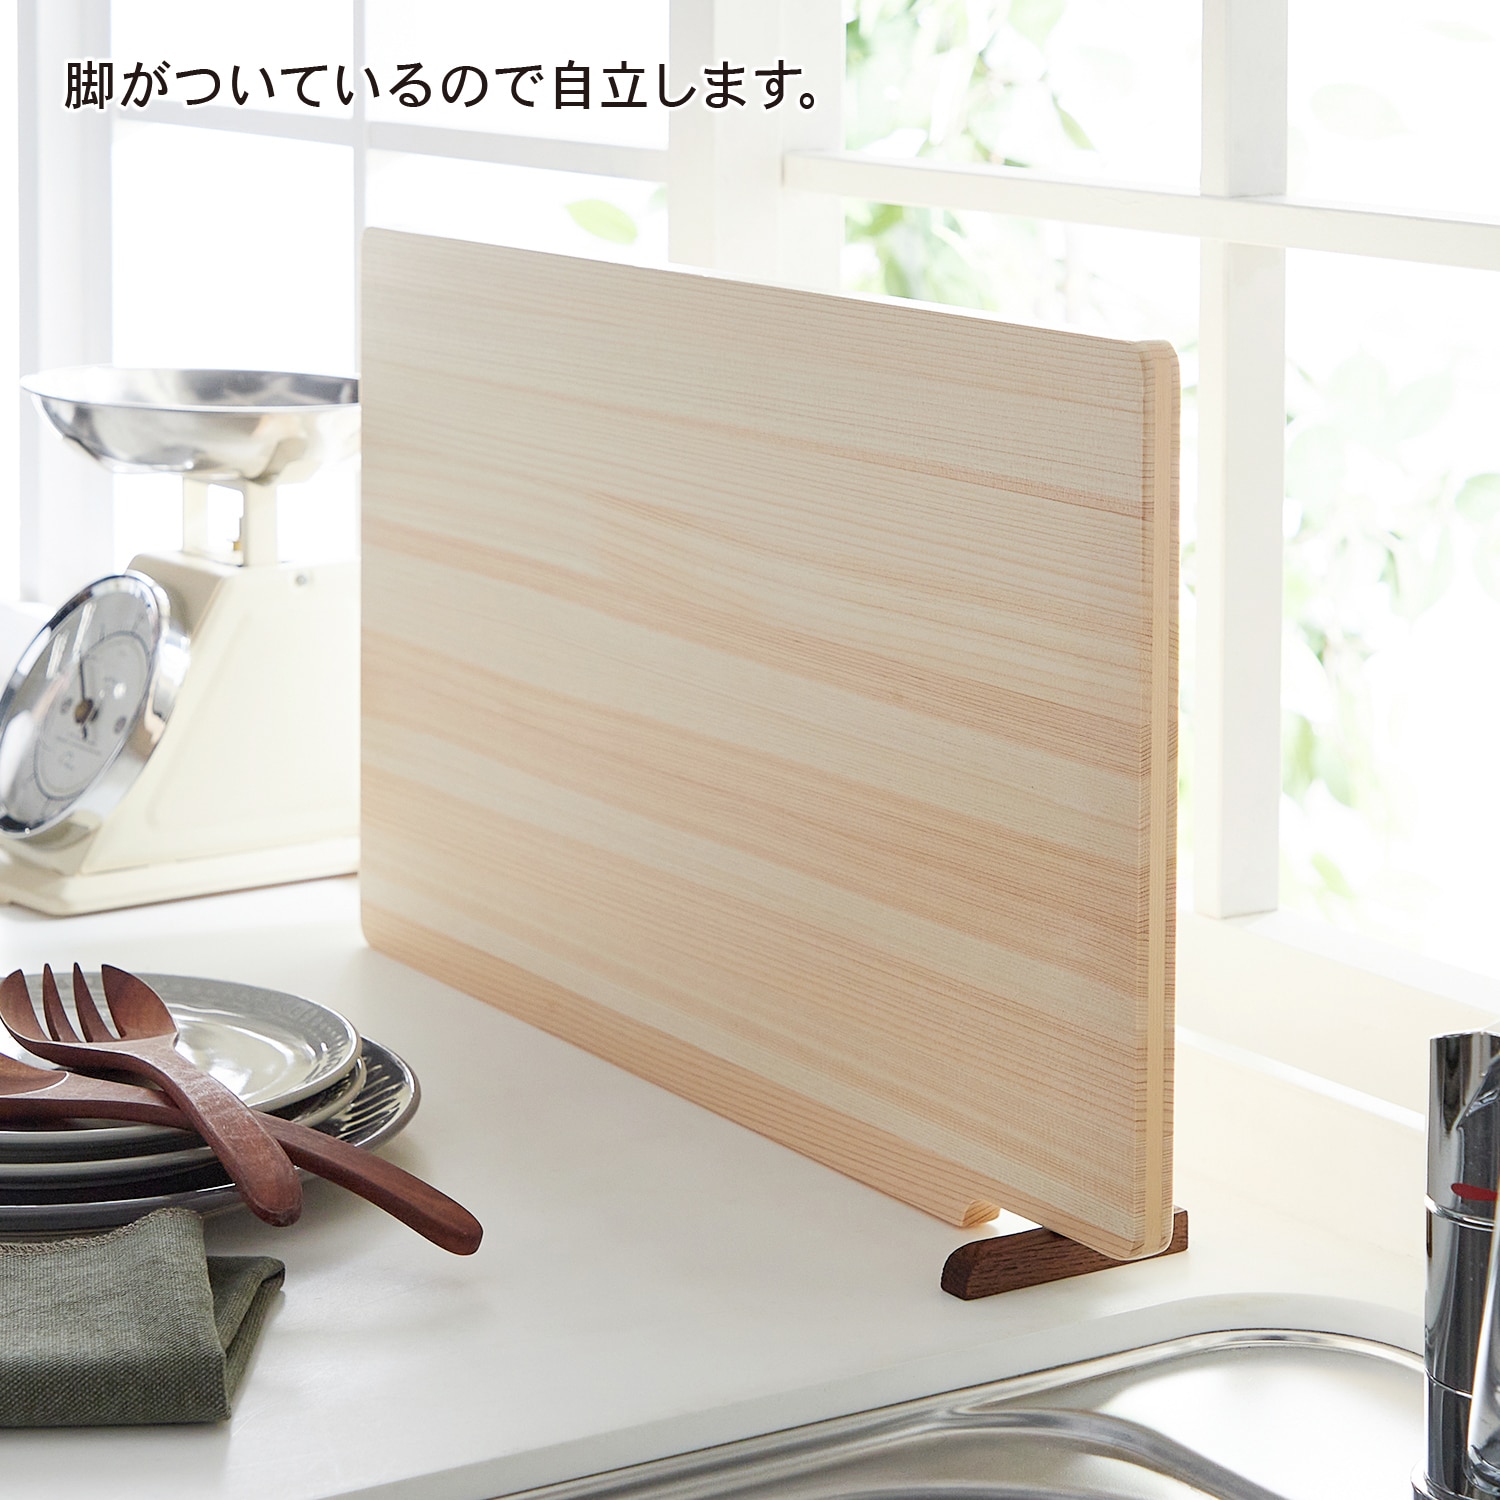 自立する大判ひのきのまな板[日本製] 45×24cm - 調理器具